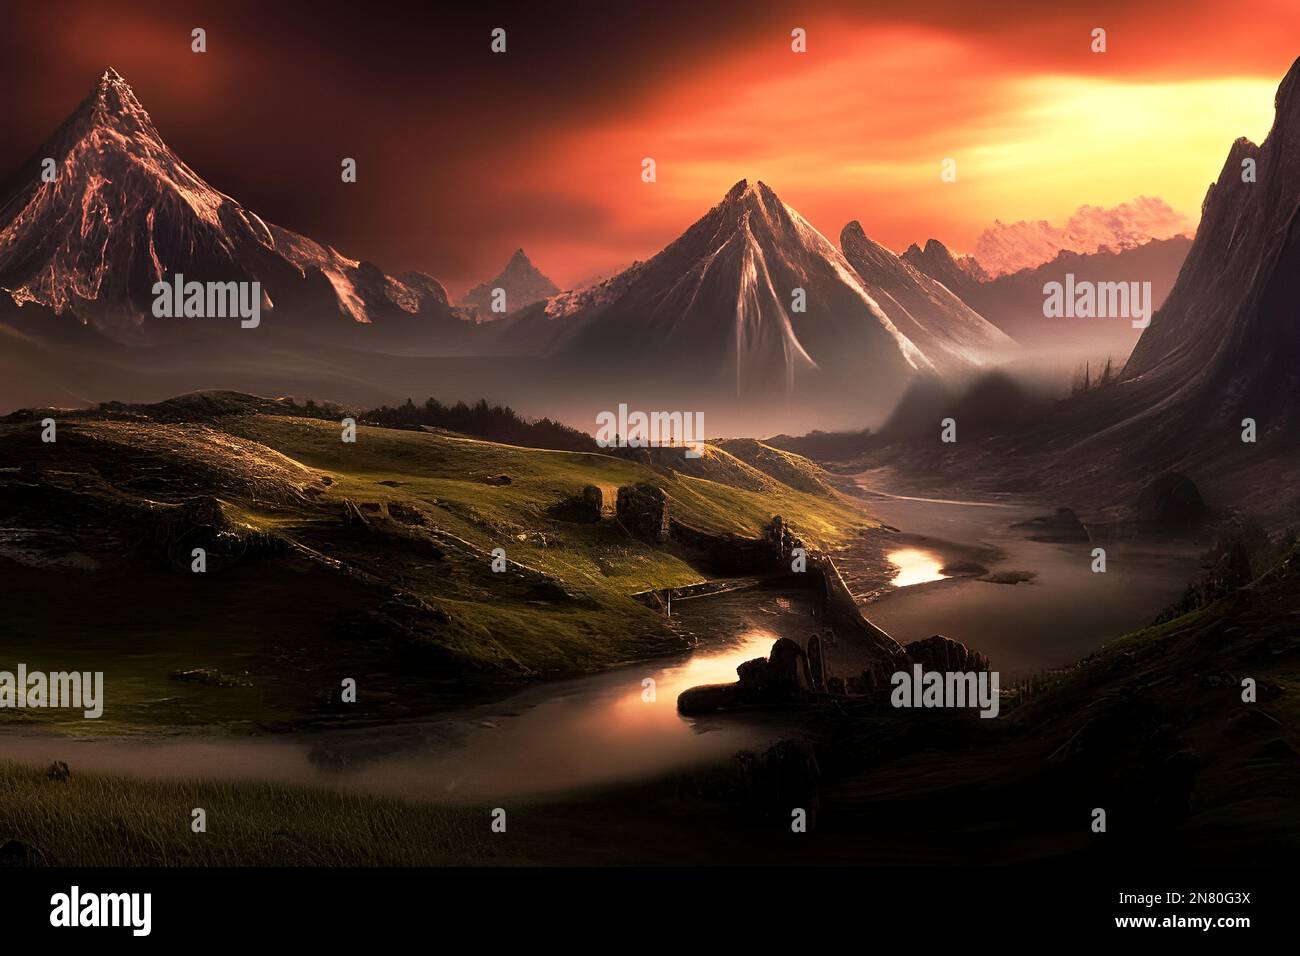 Mountain range at sundown depiction. Stock Photo